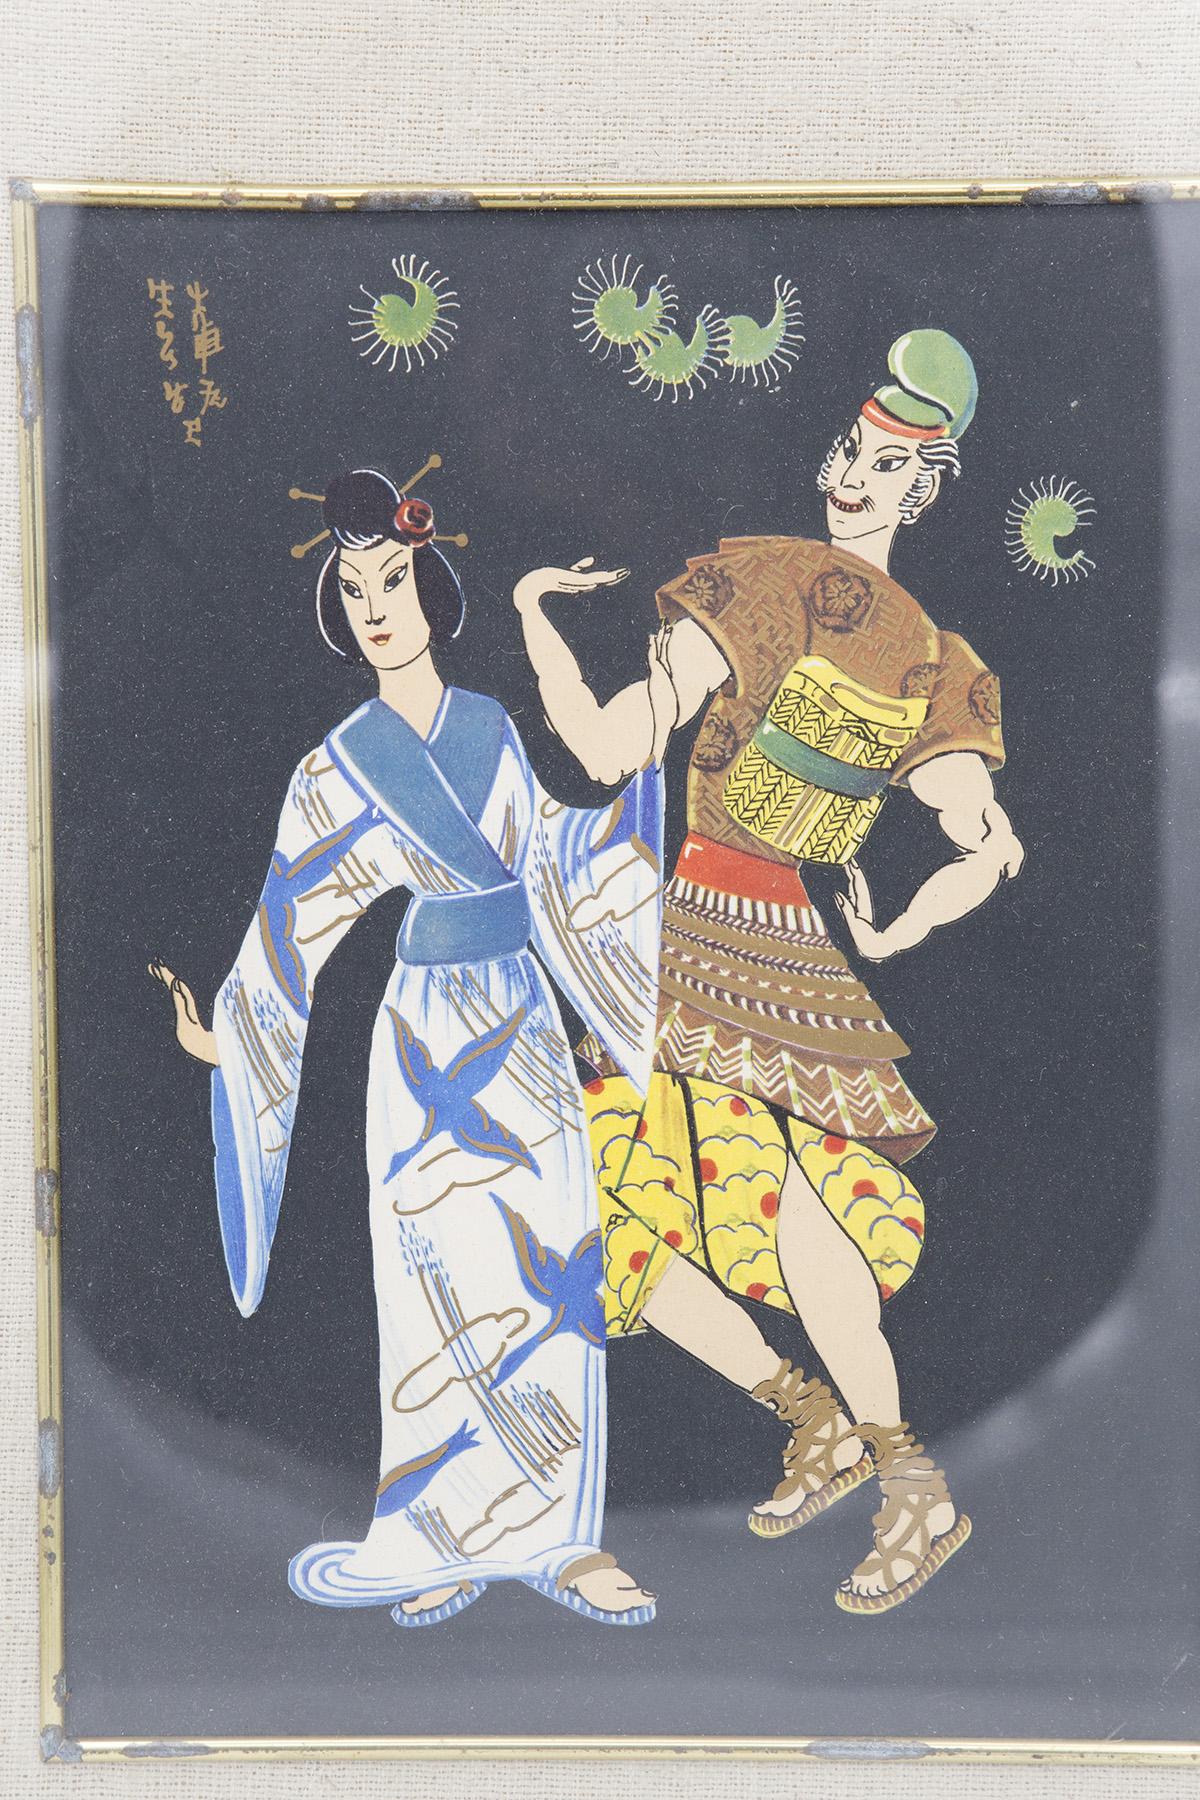 Ancienne et très rare peinture japonaise réalisée au début des années 1900, belle fabrication japonaise.
Le tableau a un cadre rectangulaire en laiton, avec des coins arrondis. A l'intérieur nous voyons un autre cadre en yuta, couleur sable